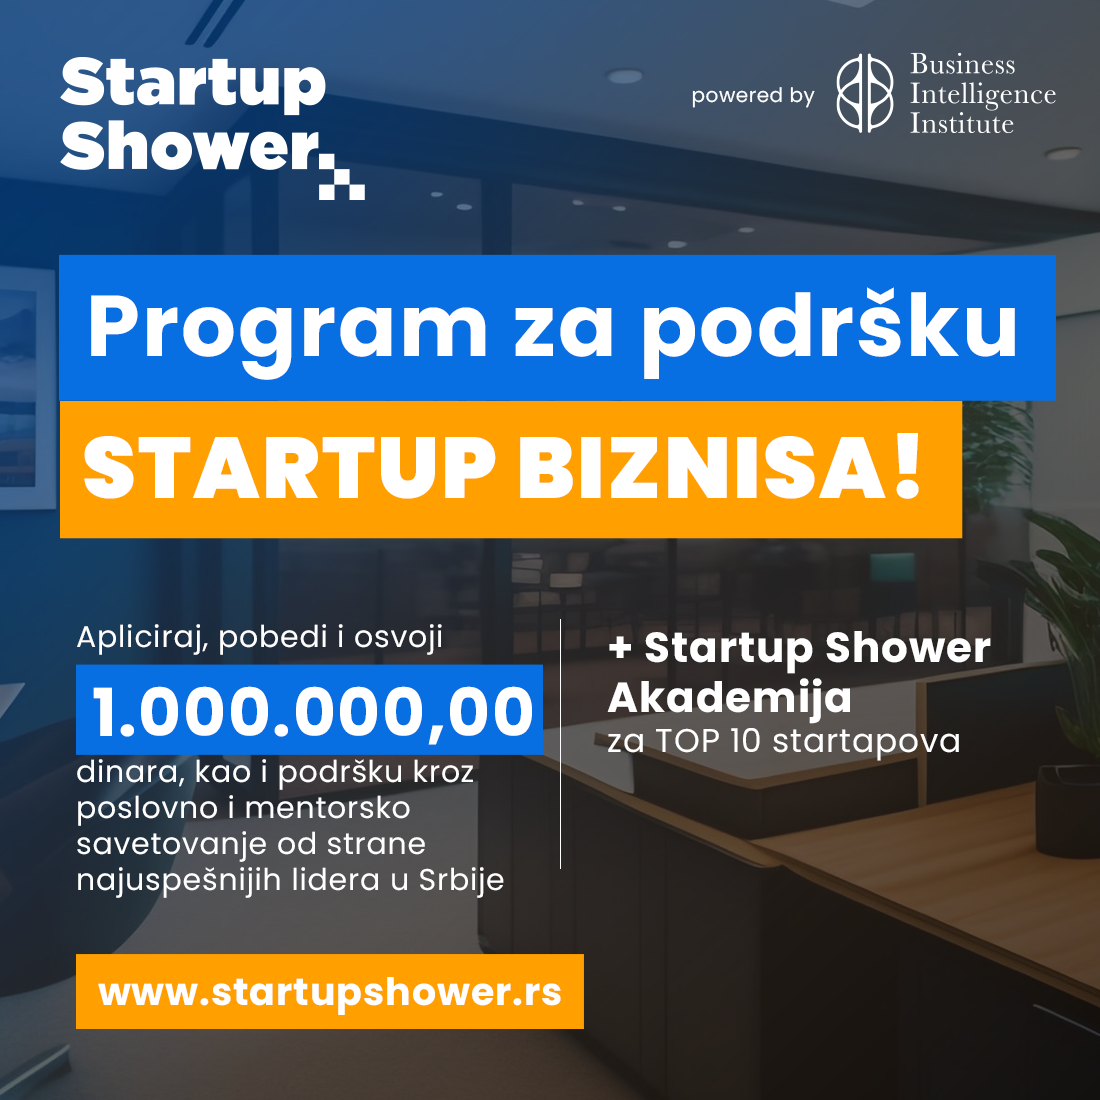 Startup Shower